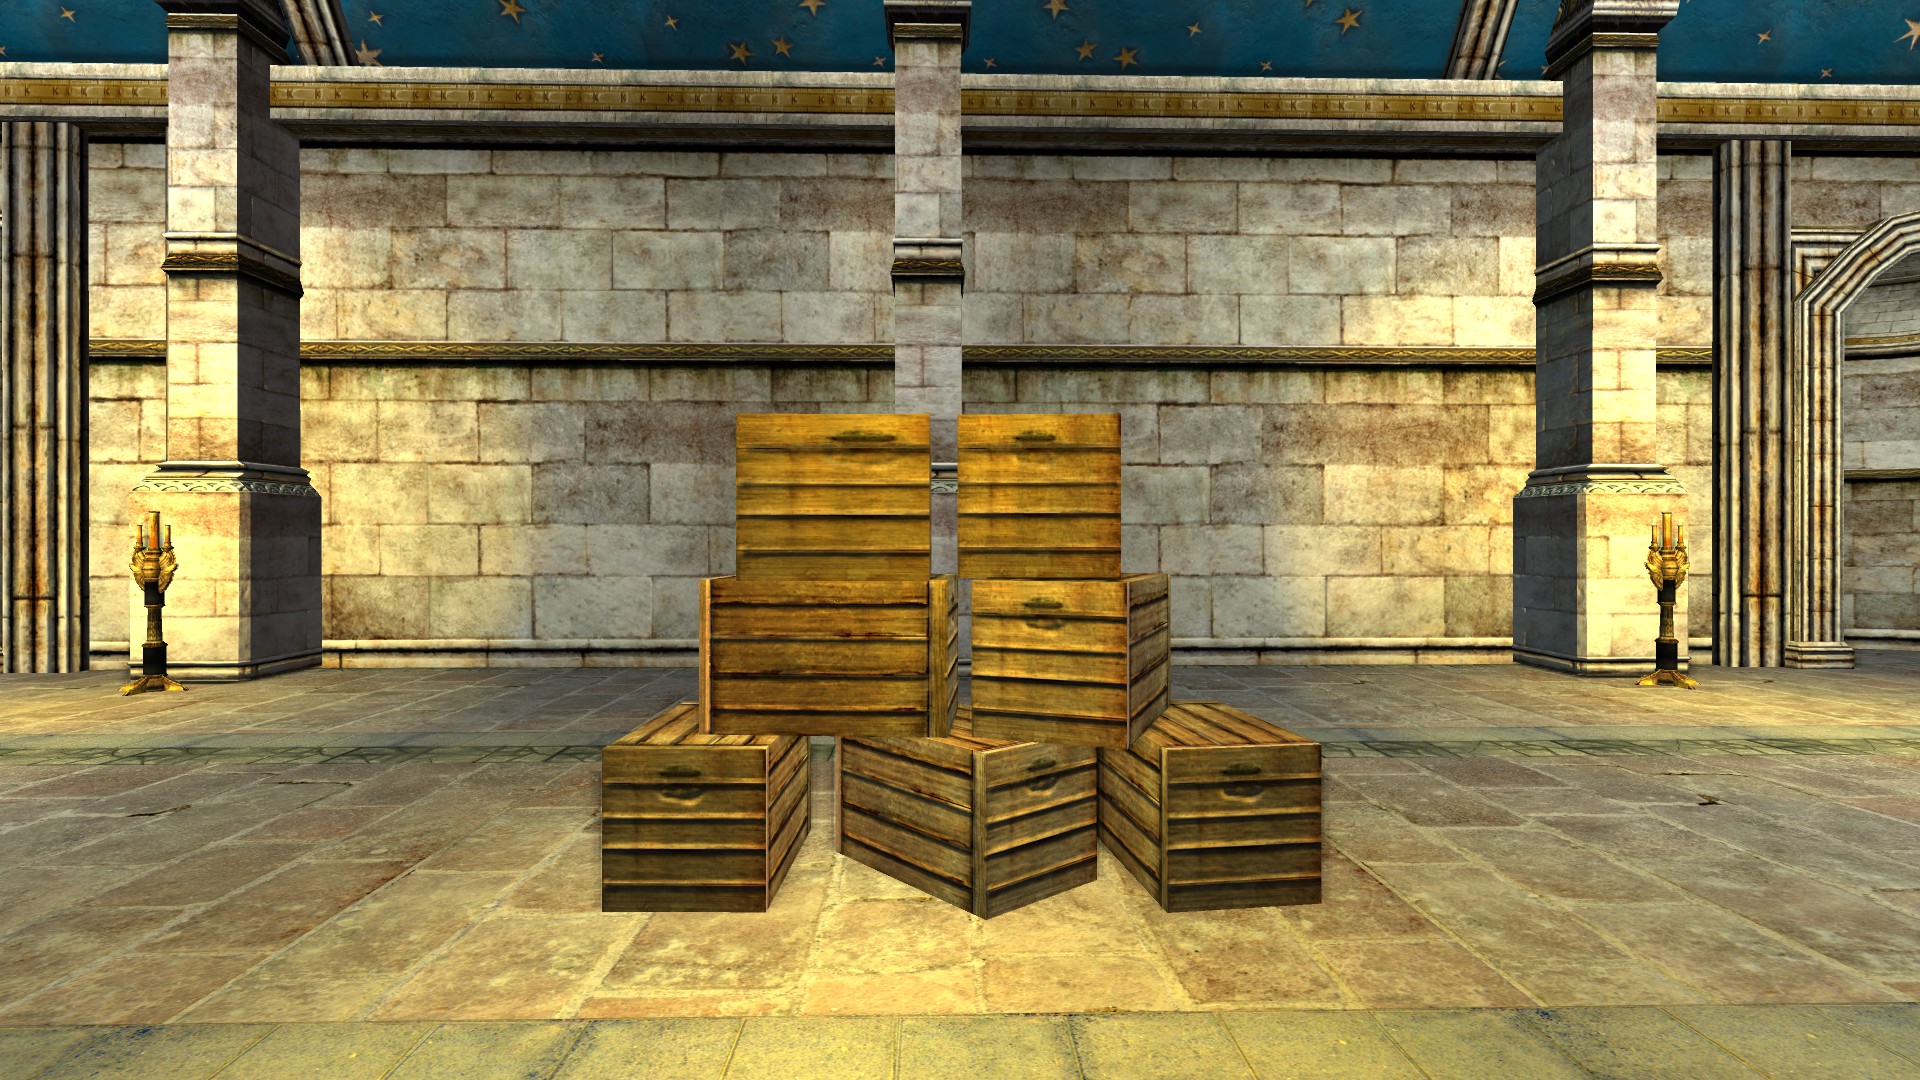 Mur de caisses destinées au marché